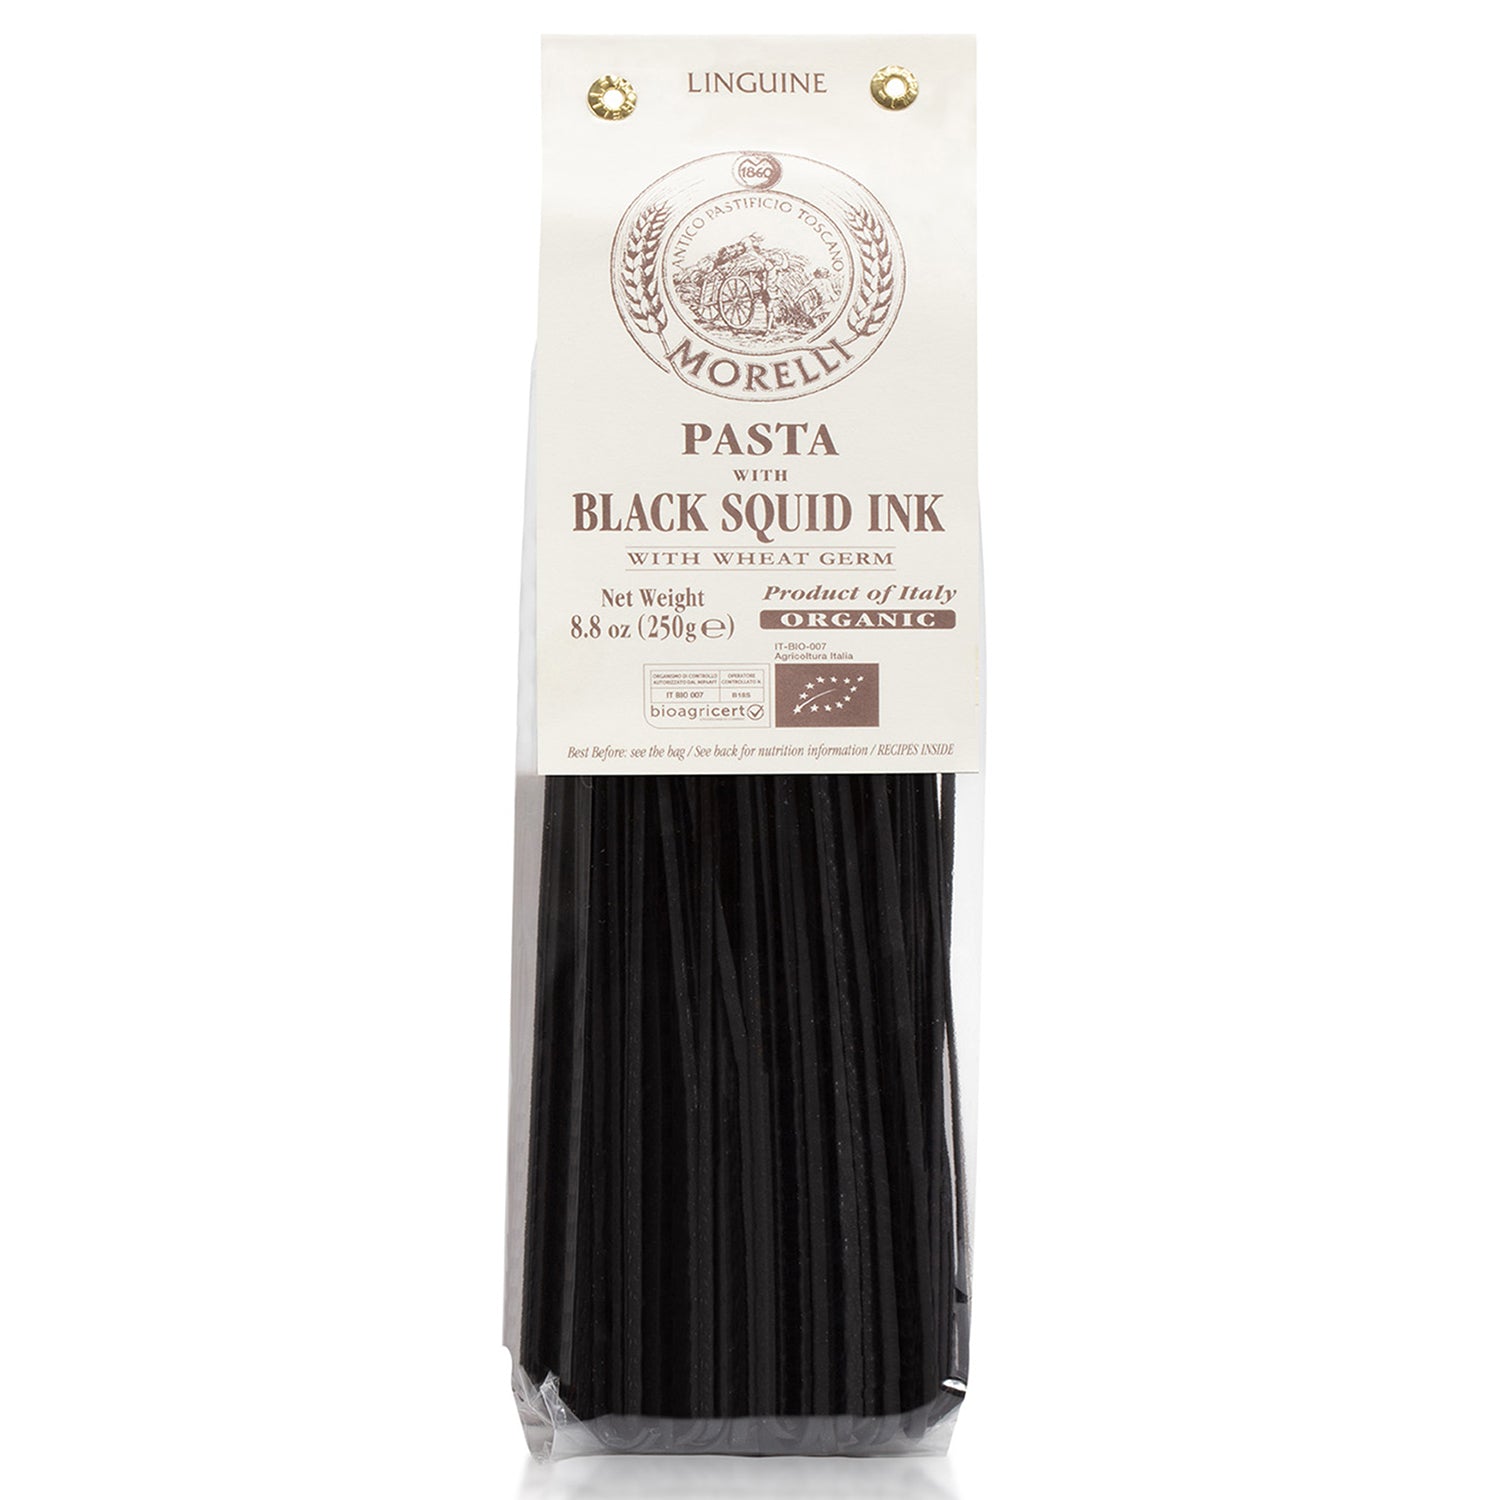 Morelli Organic Black Squid Ink Pasta Linguine